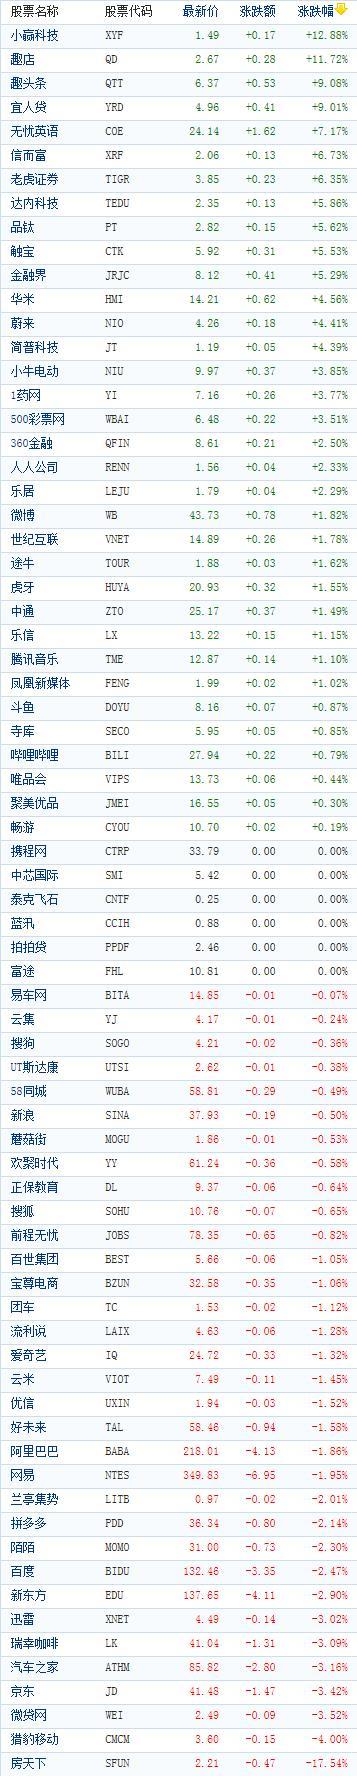 中国概念股周四收盘涨跌互现 趣店逆势涨近12%